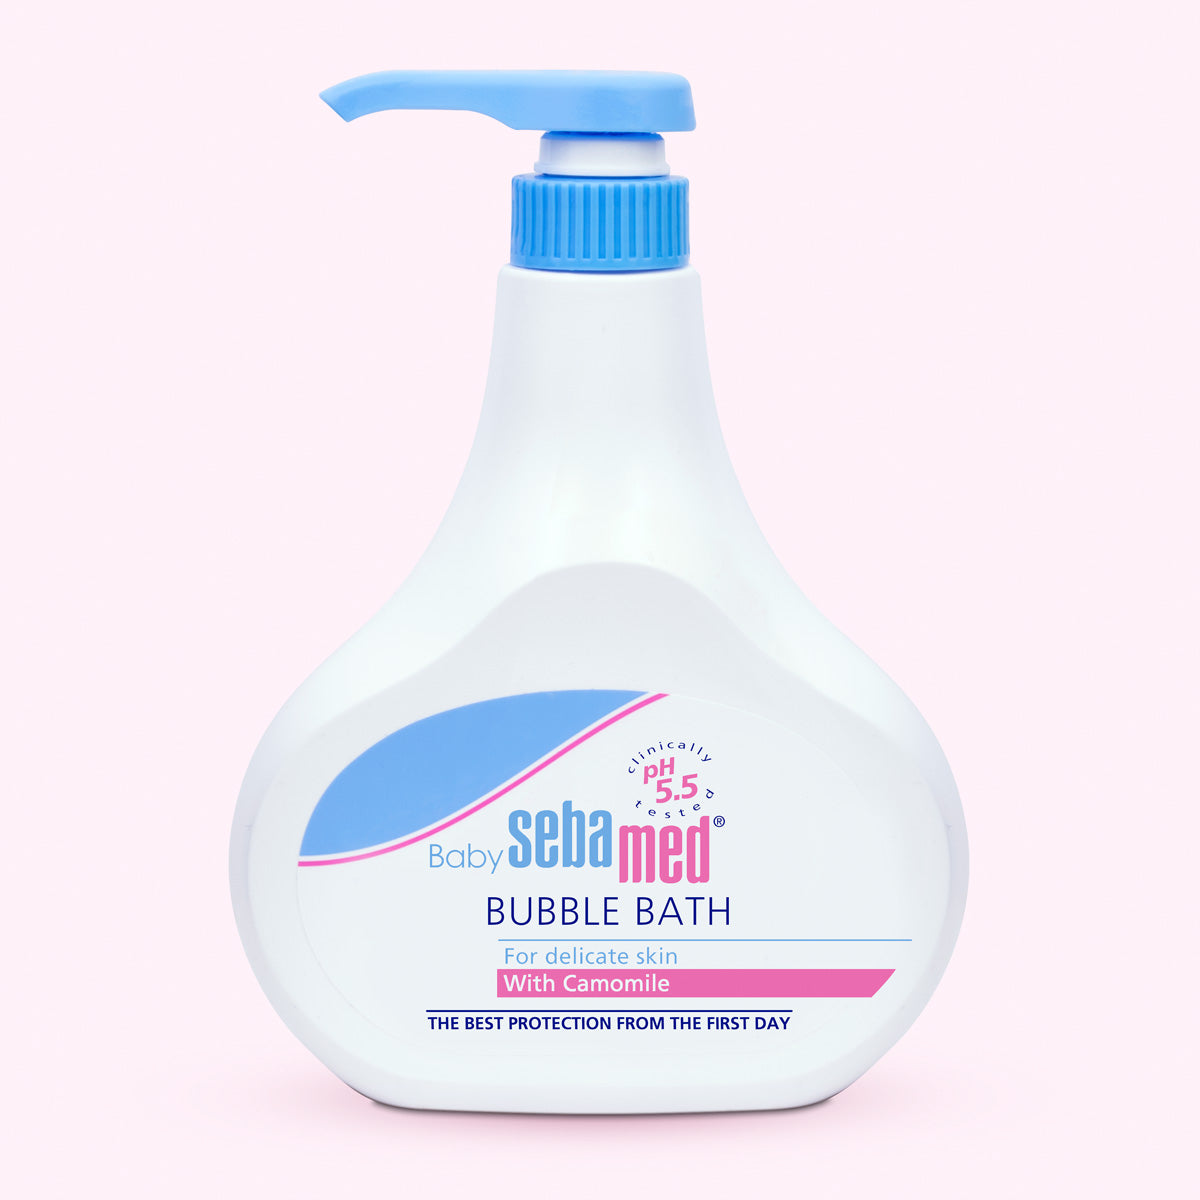 Baby Sebamed Bubble bath large